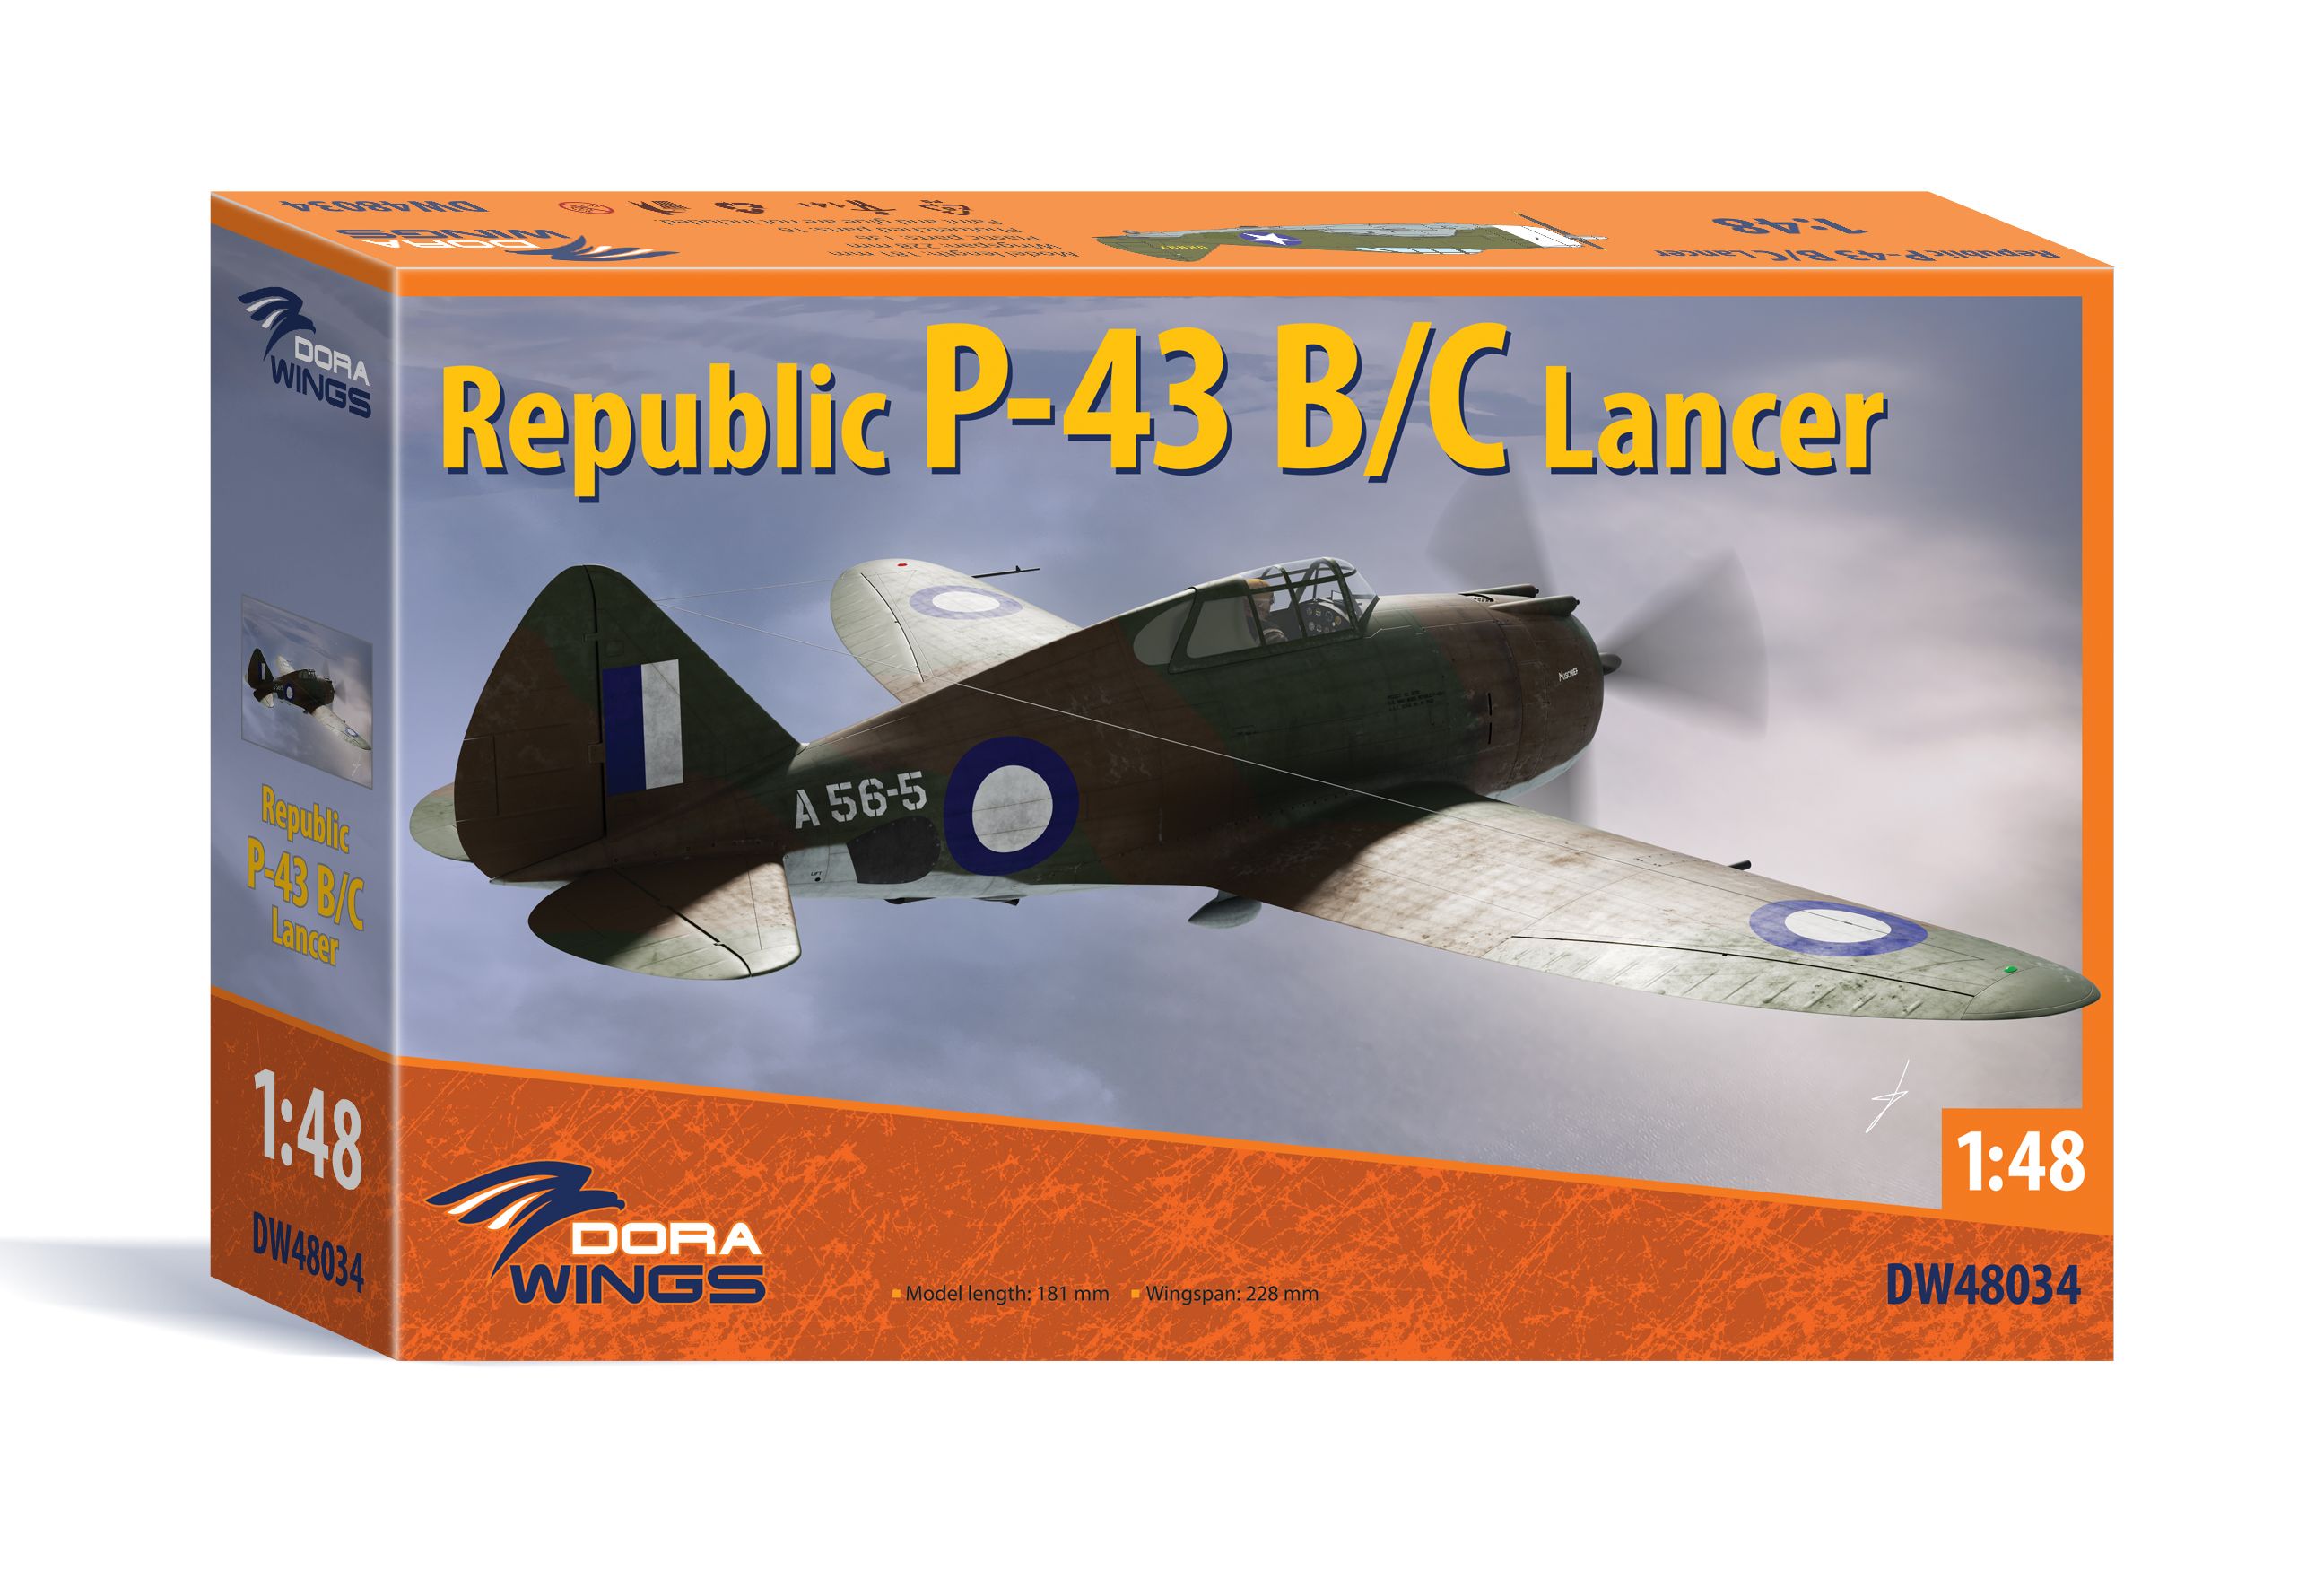 Republic P-43B/C Lancer